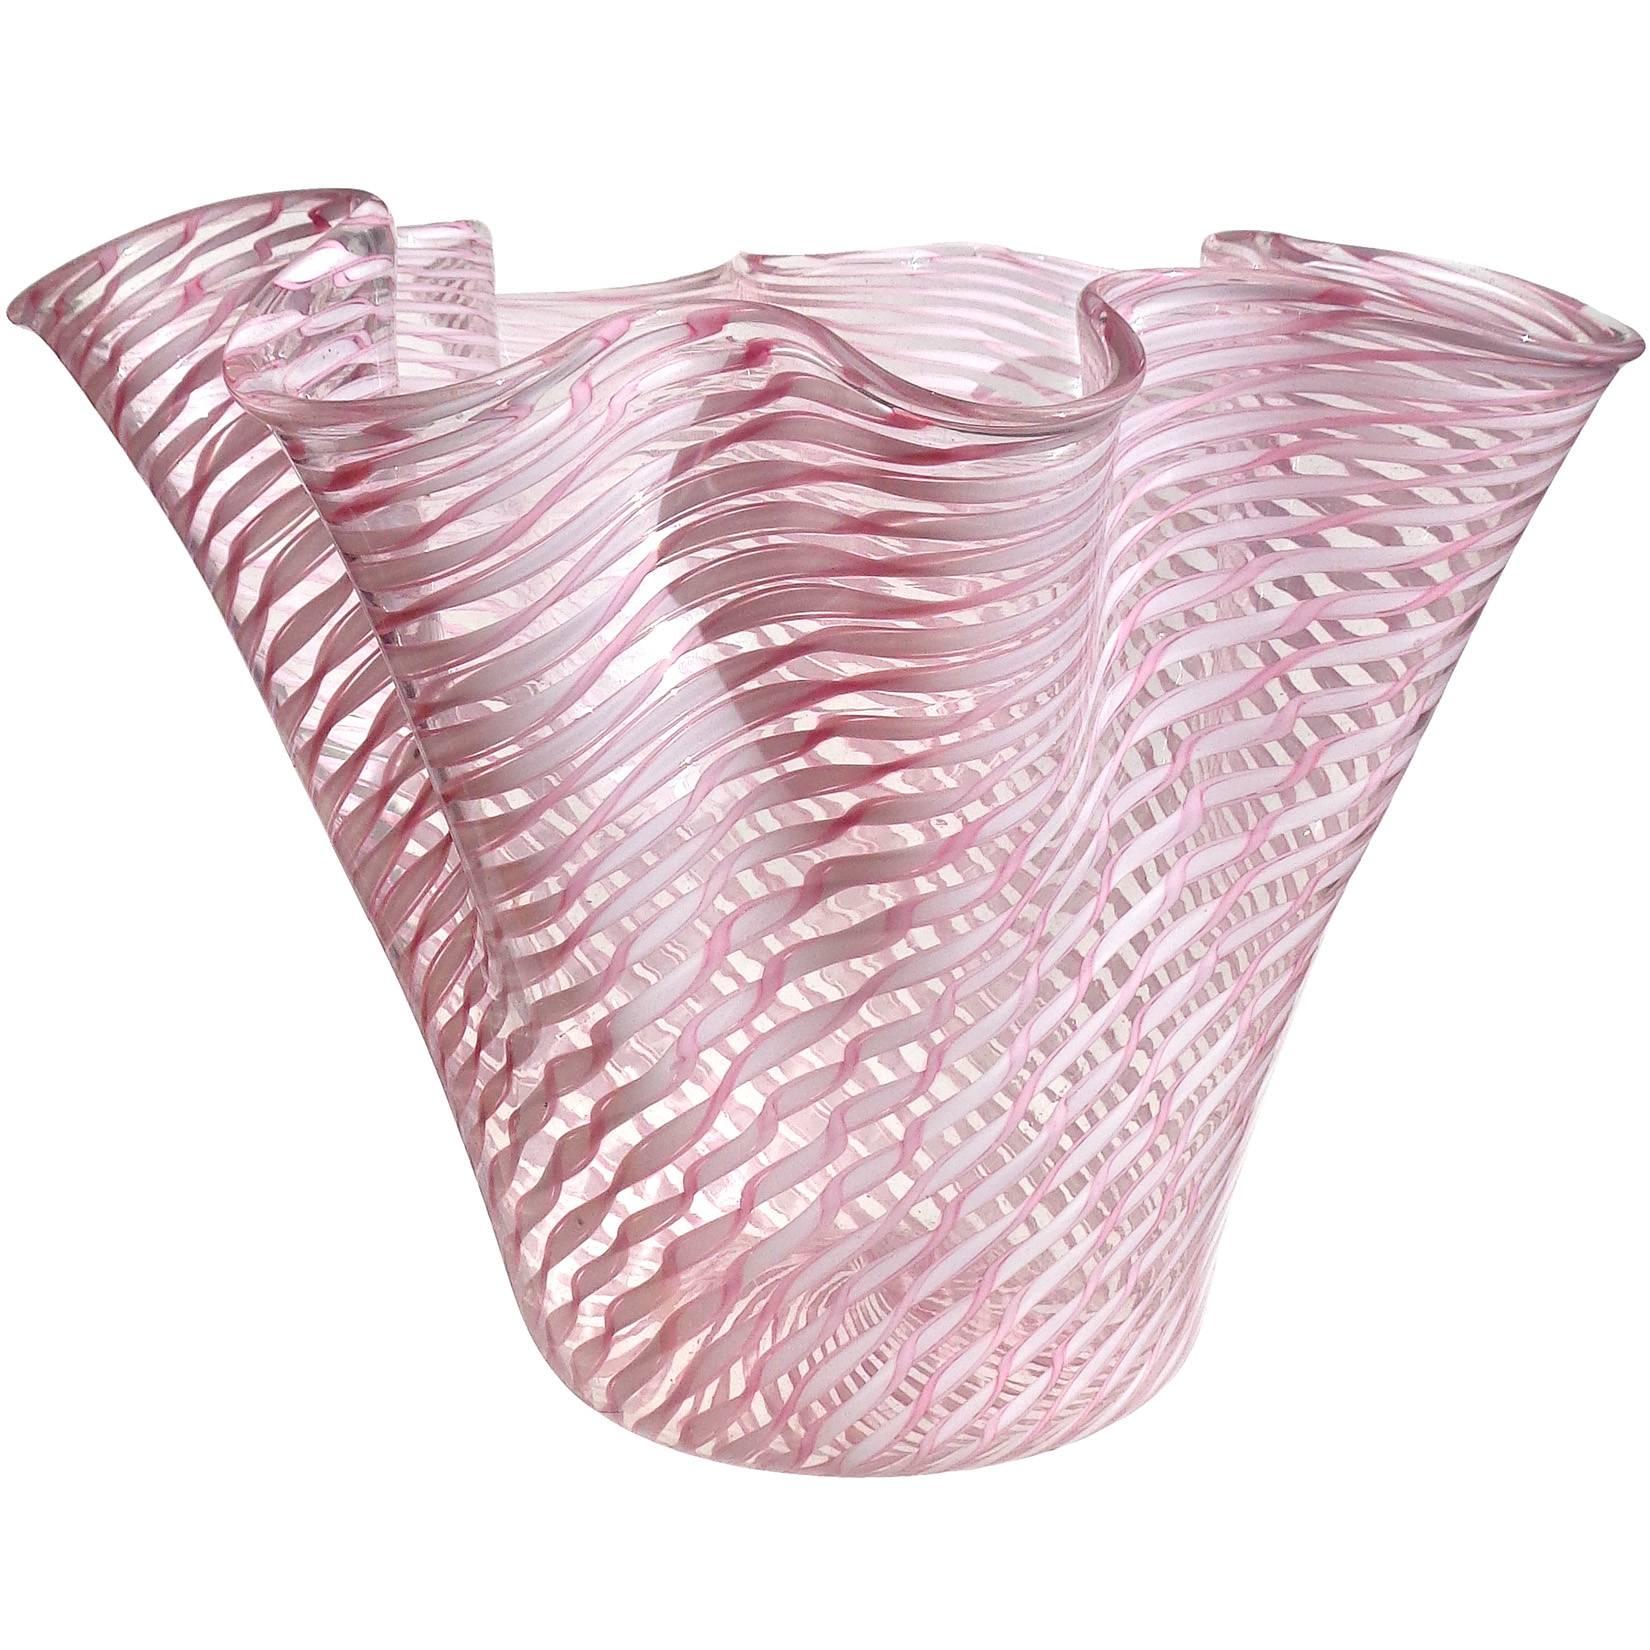 Fratelli Toso Murano Pink White Ribbons Italian Art Glass Flower Vase